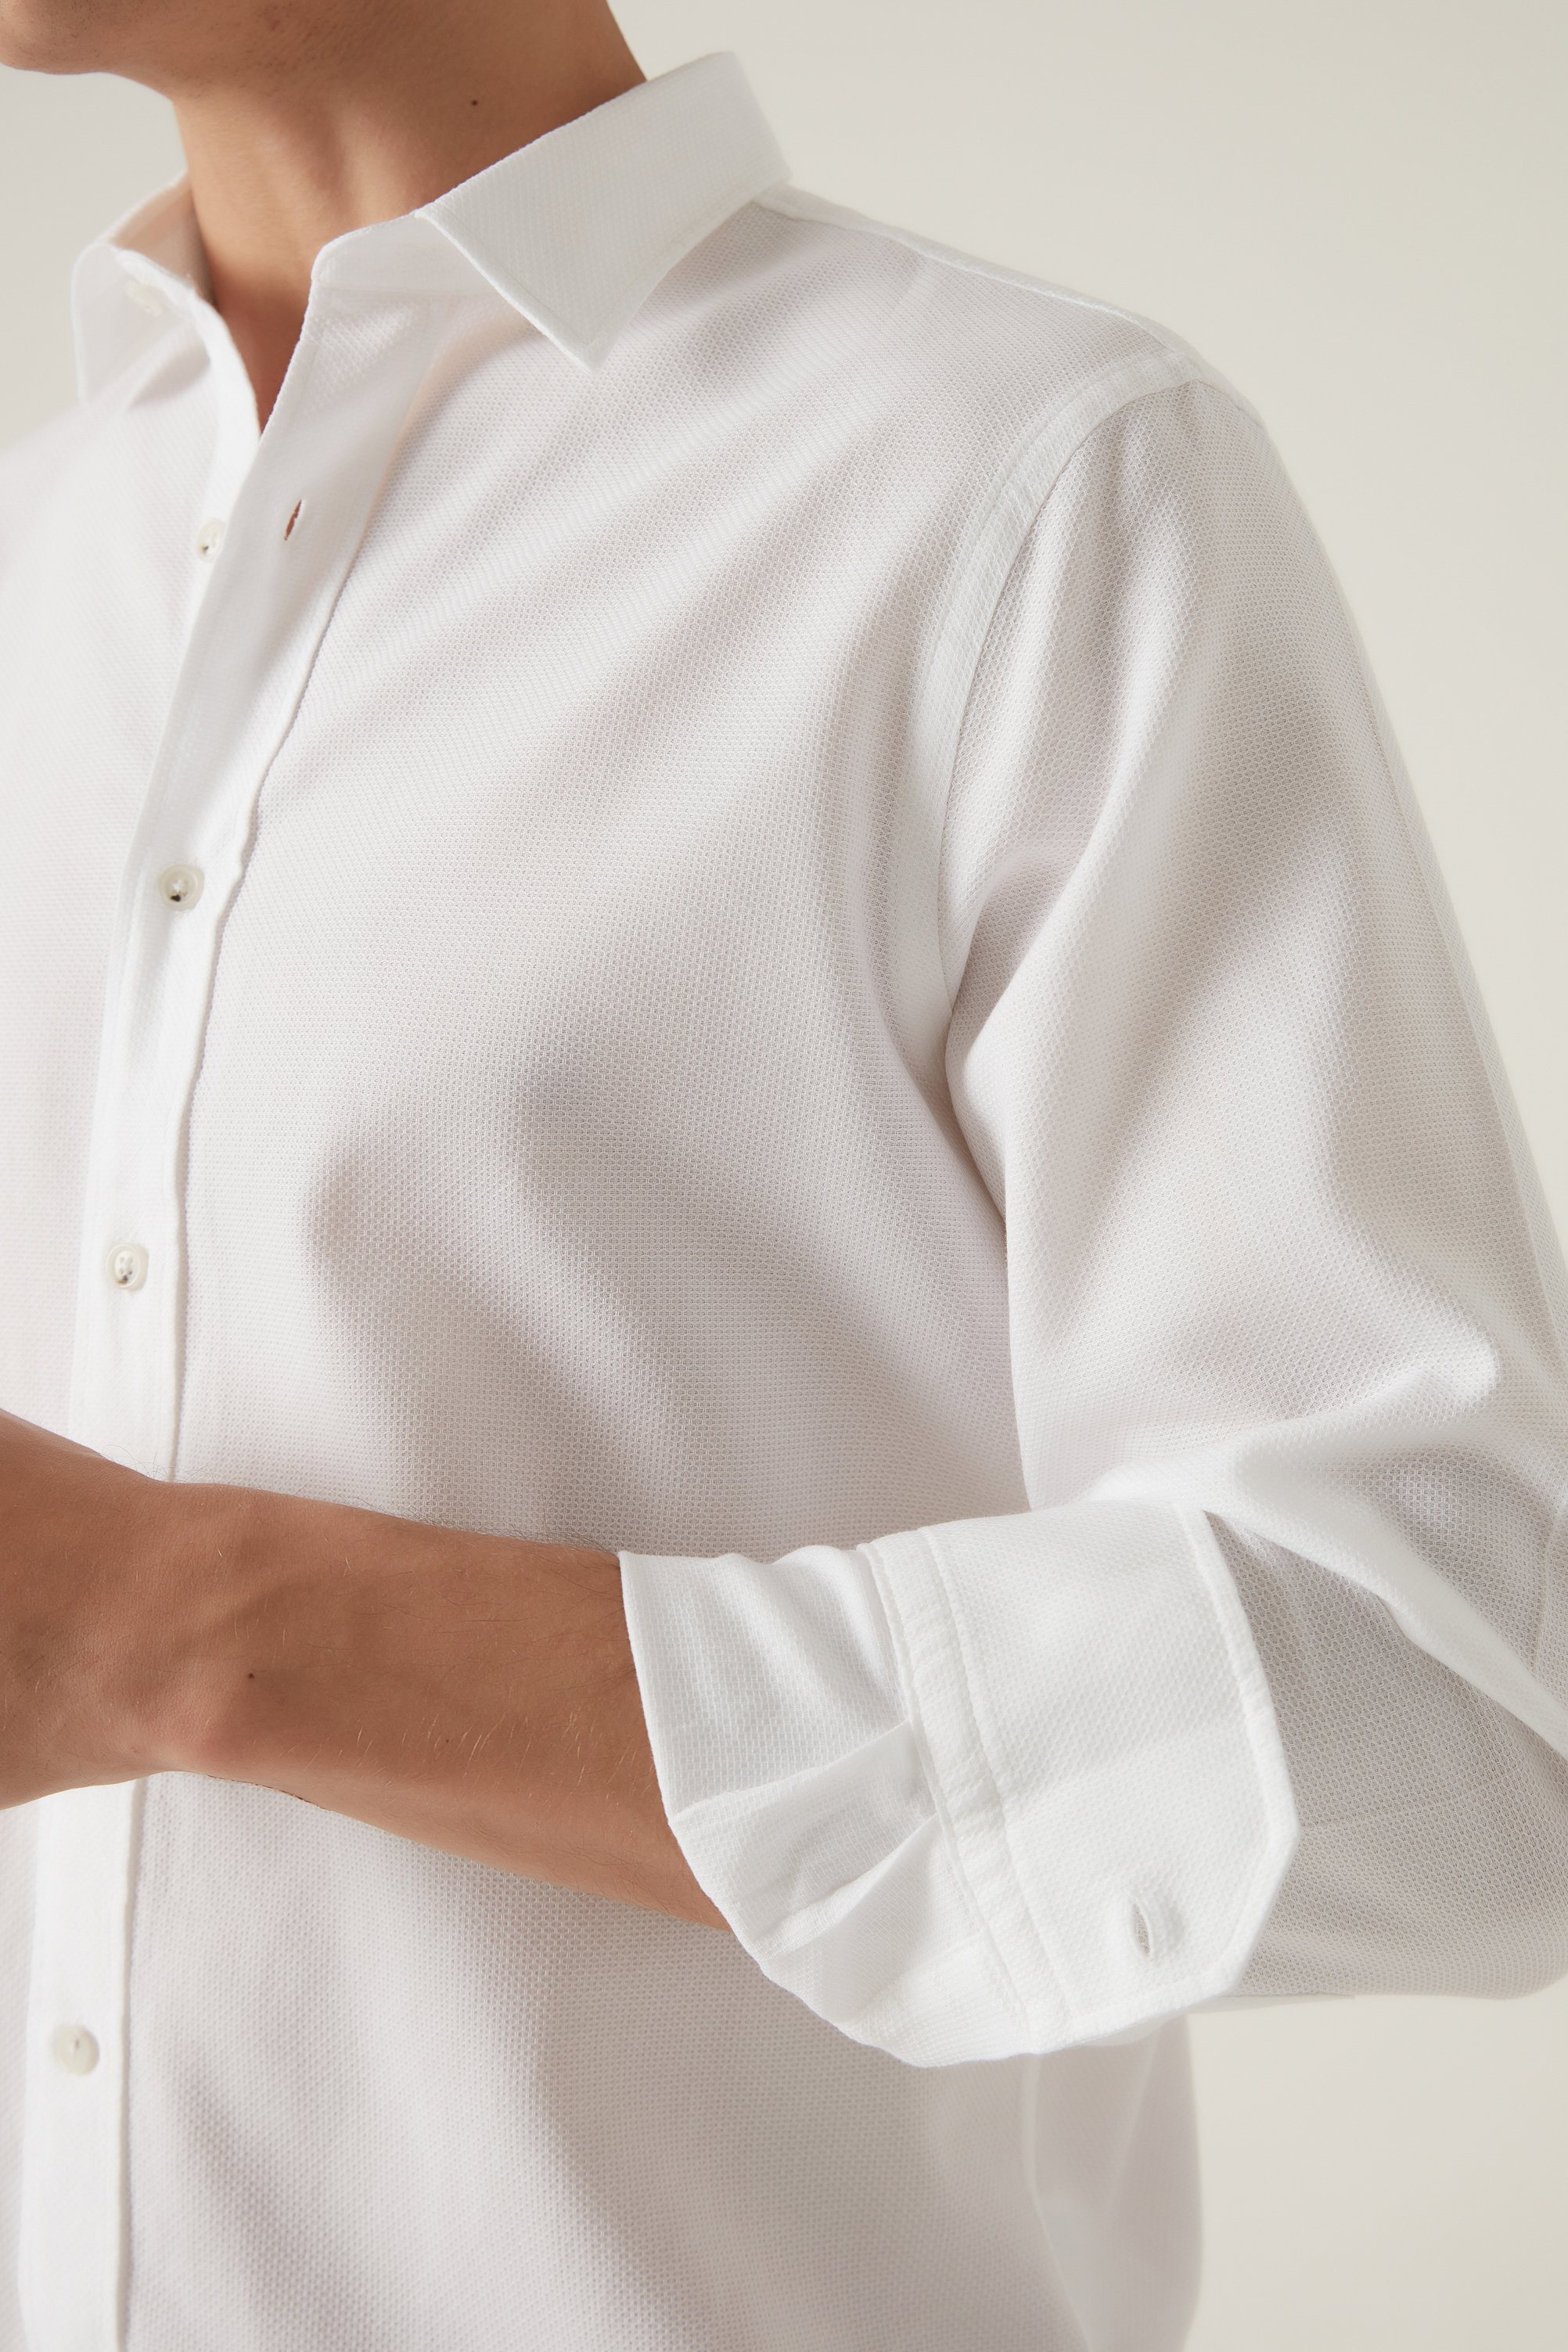 Damat Tween Damat Comfort Beyaz Gömlek. 2